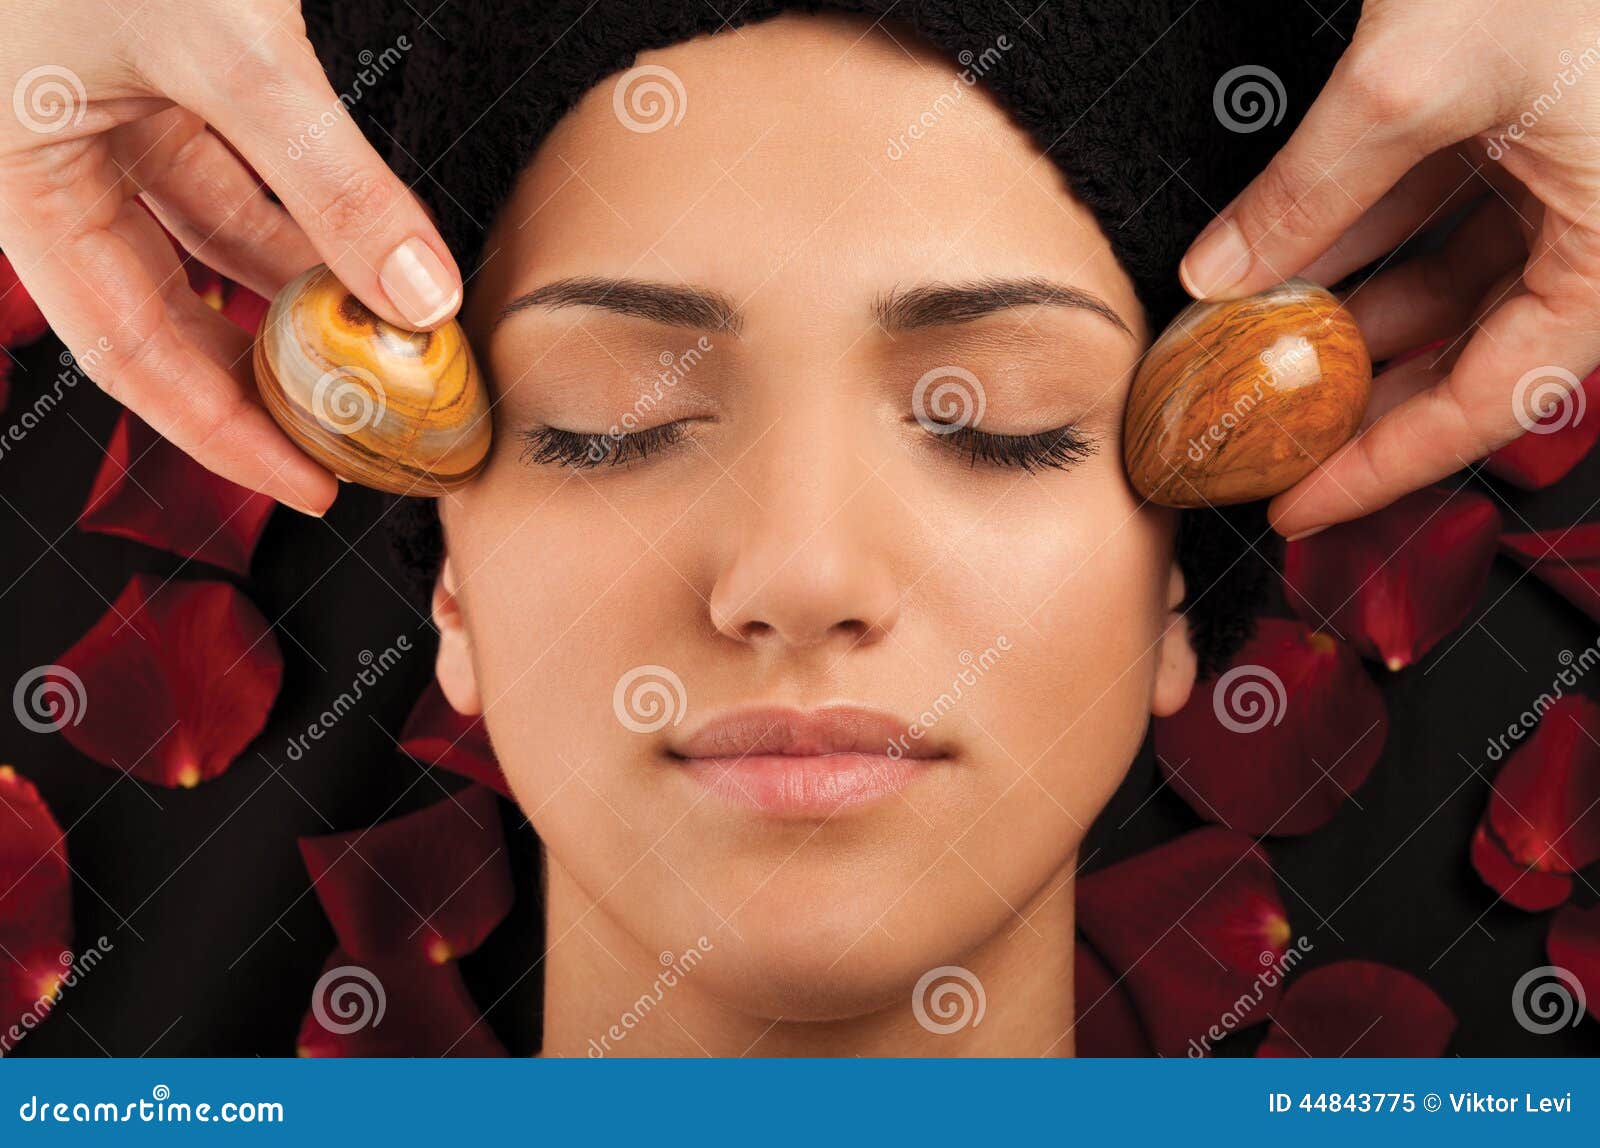 Marble Eggs Massage Stock Image Image Of Treatment Pleasure 44843775